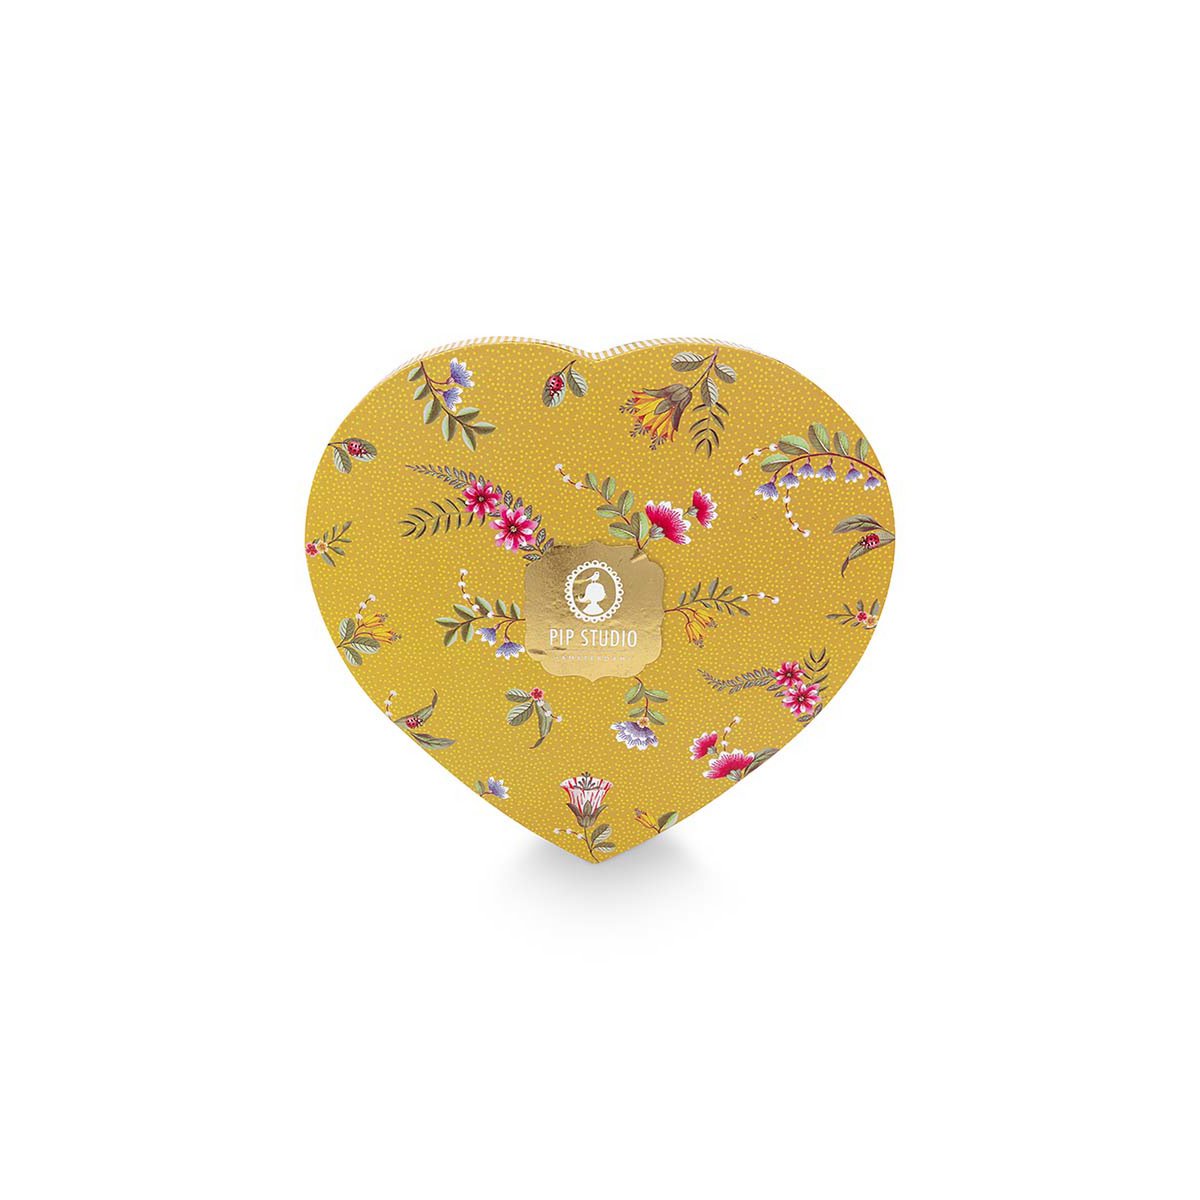 Set/2 Heart Shape Plates La Majorelle Yellow 21.5cm